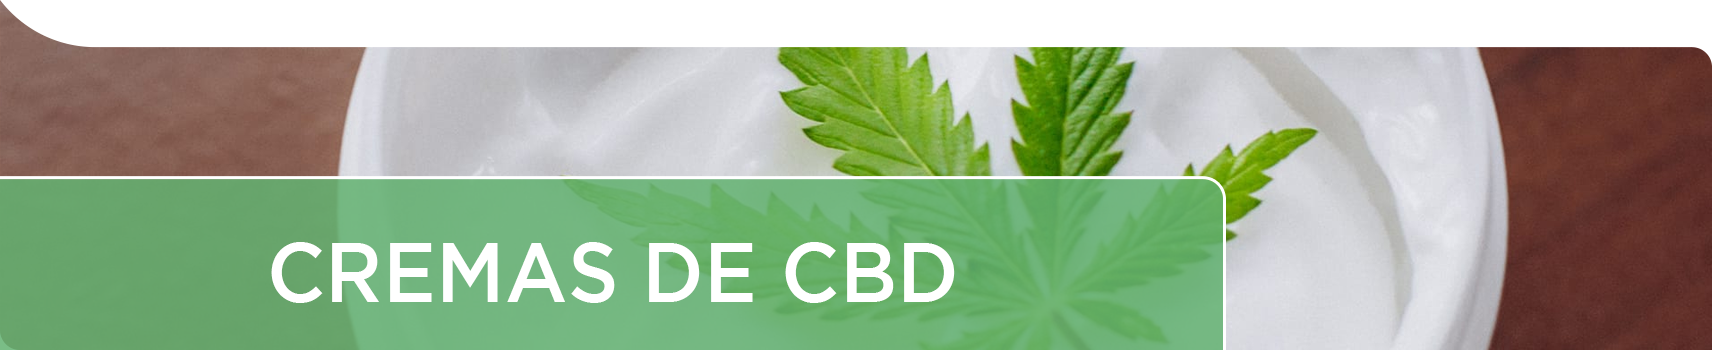 Cremas con CBD de la planta del cannabis con cannabidiol